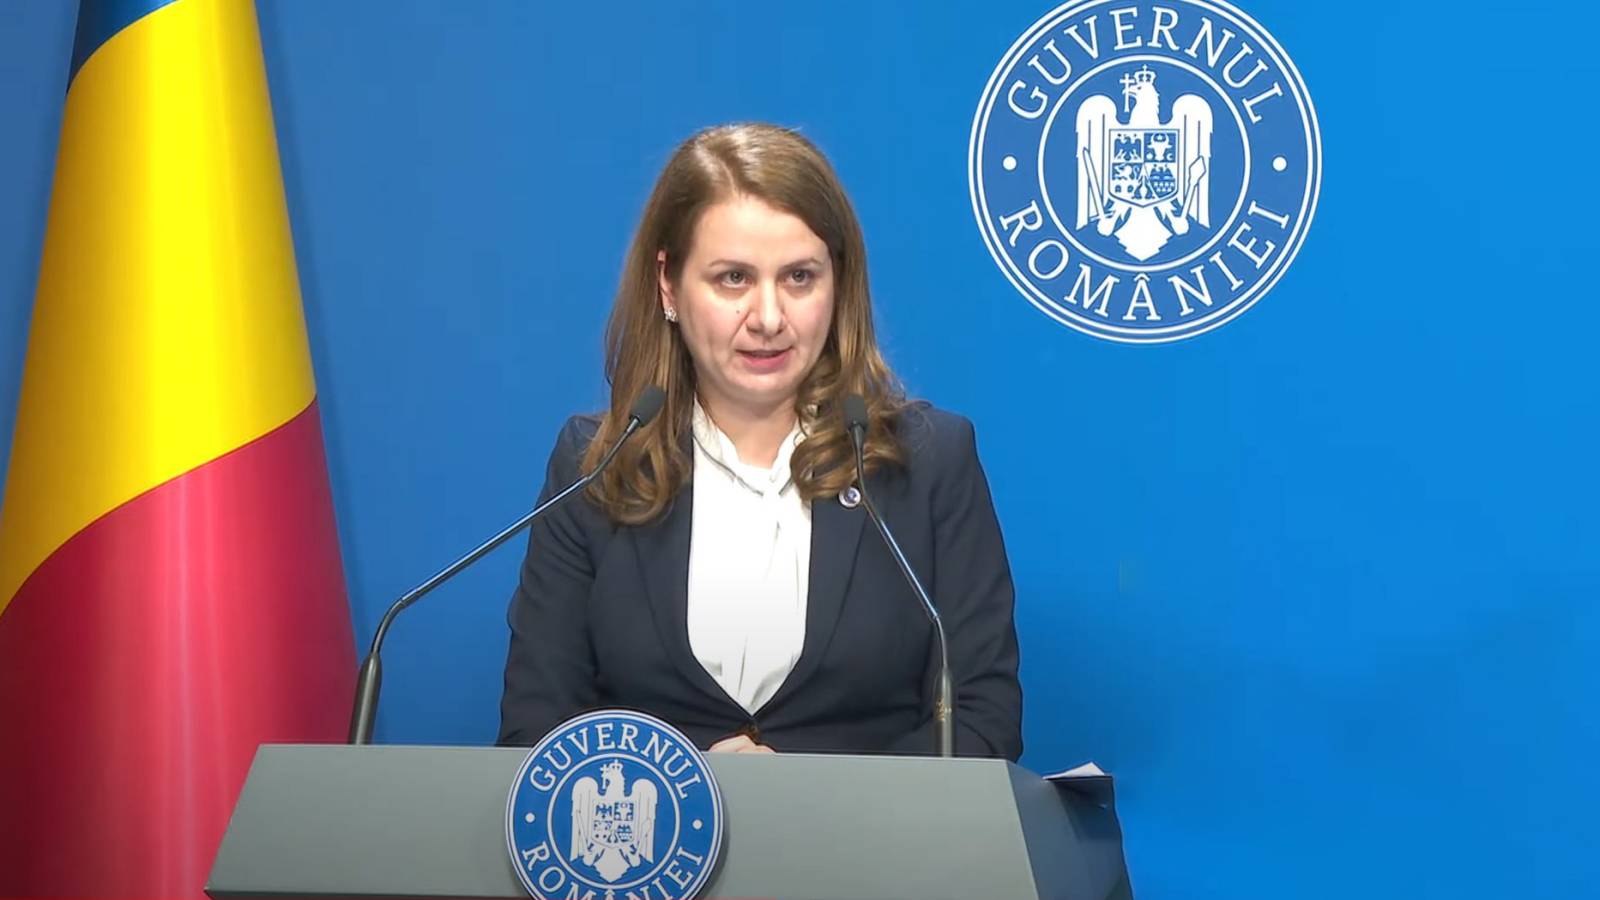 Undervisningsminister 2 Nye officielle meddelelser SIDSTE MINUTE Fordelagtige foranstaltninger for rumænske studerende